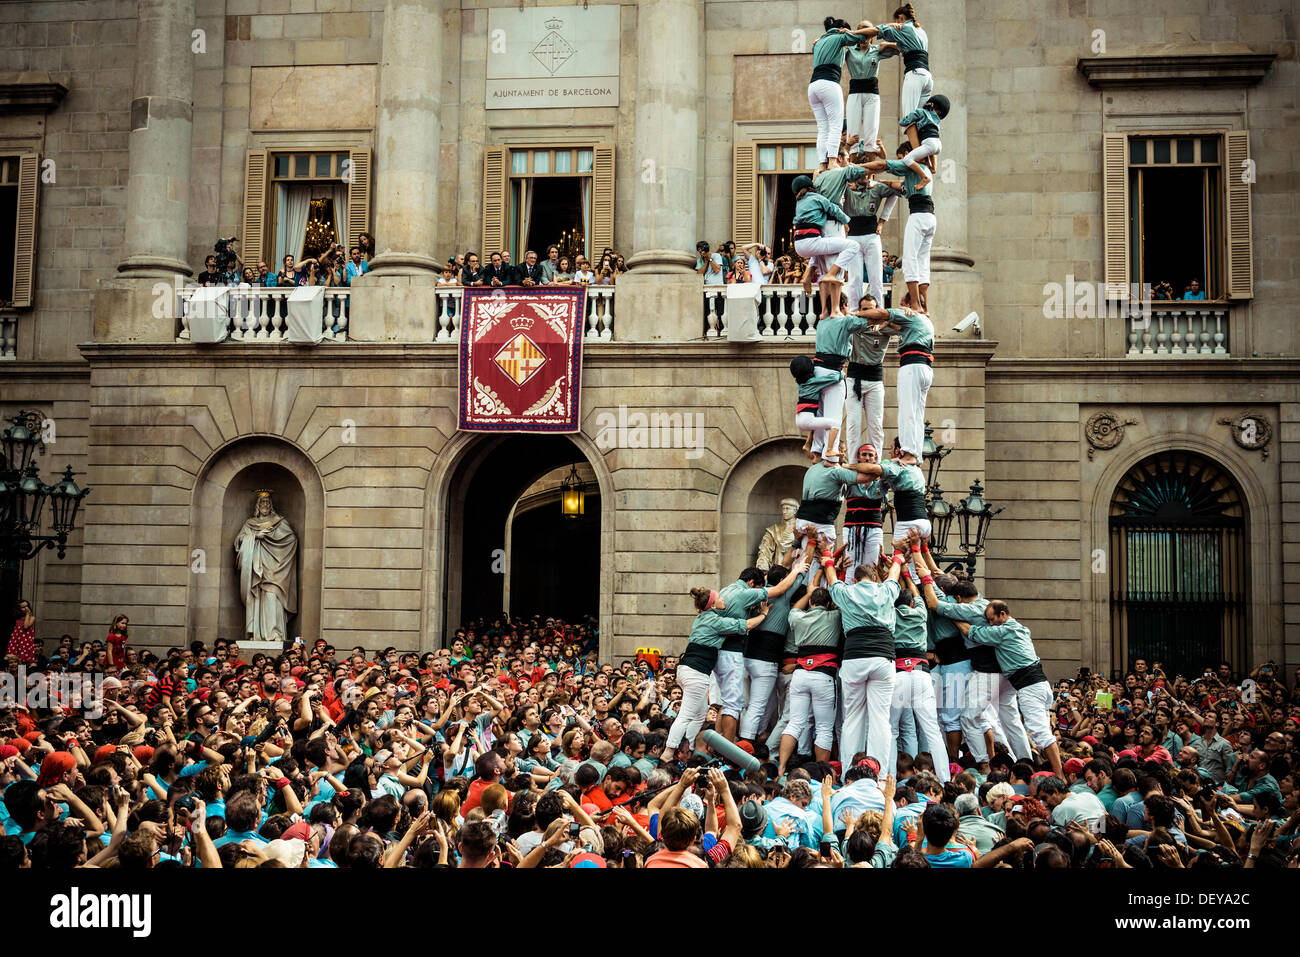 Barcelone, Espagne. Sep 24, 2013 : l'Castellers de sans construire une tour humaine en face de l'hôtel de ville de Barcelone au cours de la ville, festival de la Merce, 2013 © matthi/Alamy Live News Banque D'Images